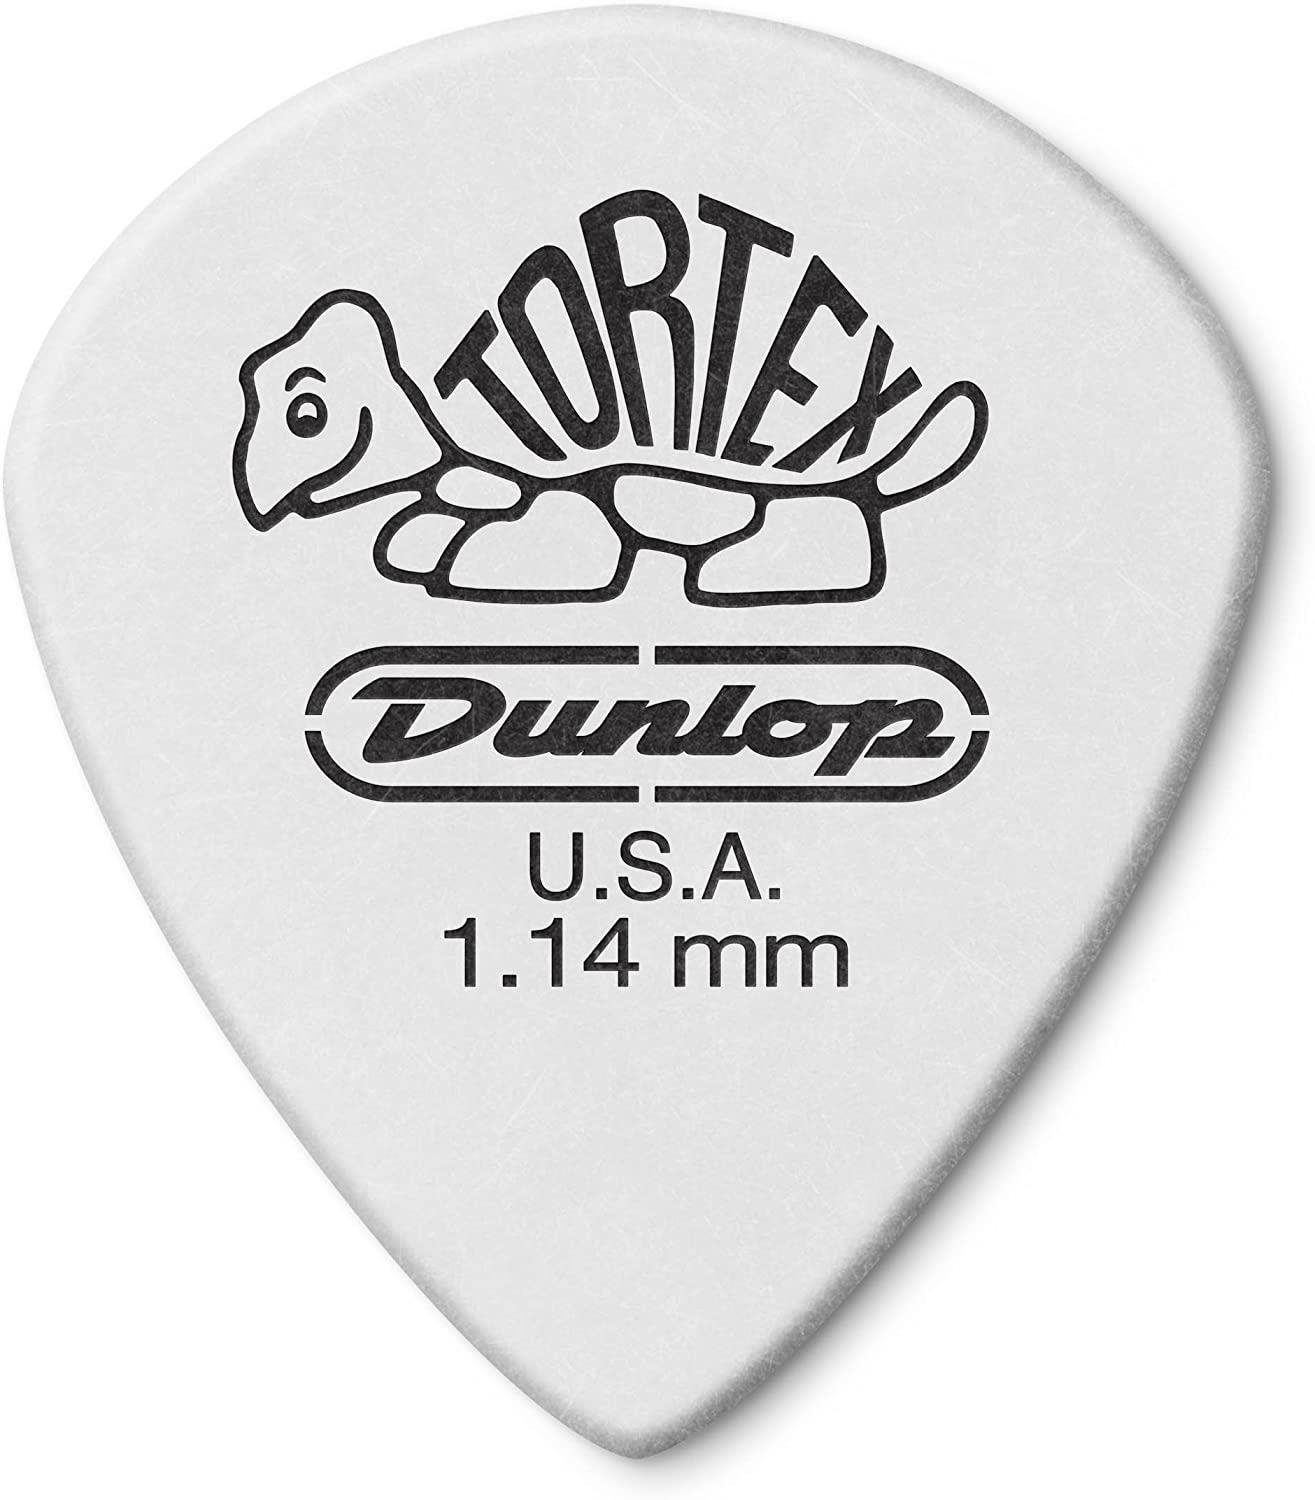 Pengető Dunlop 478P1.14